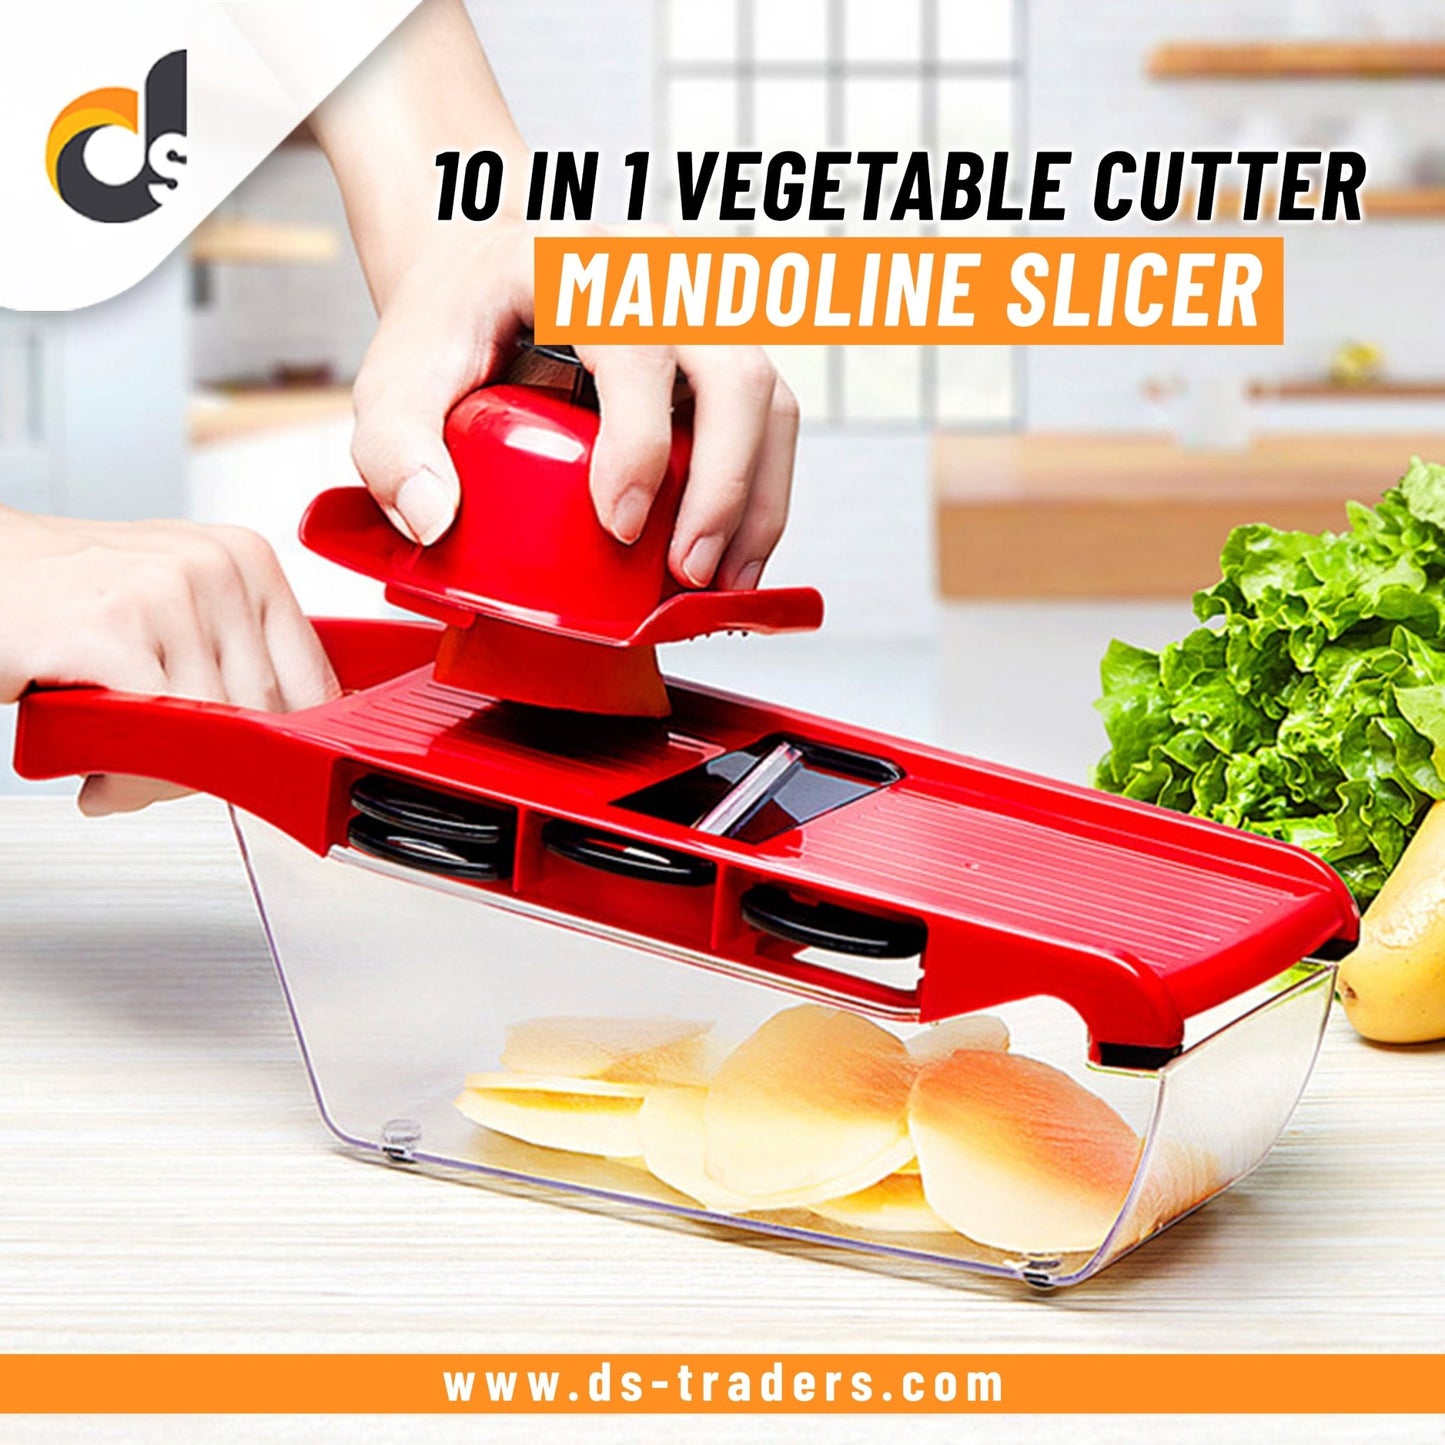 10 in 1 Vegetable Cutter Mandoline Slicer - DS Traders